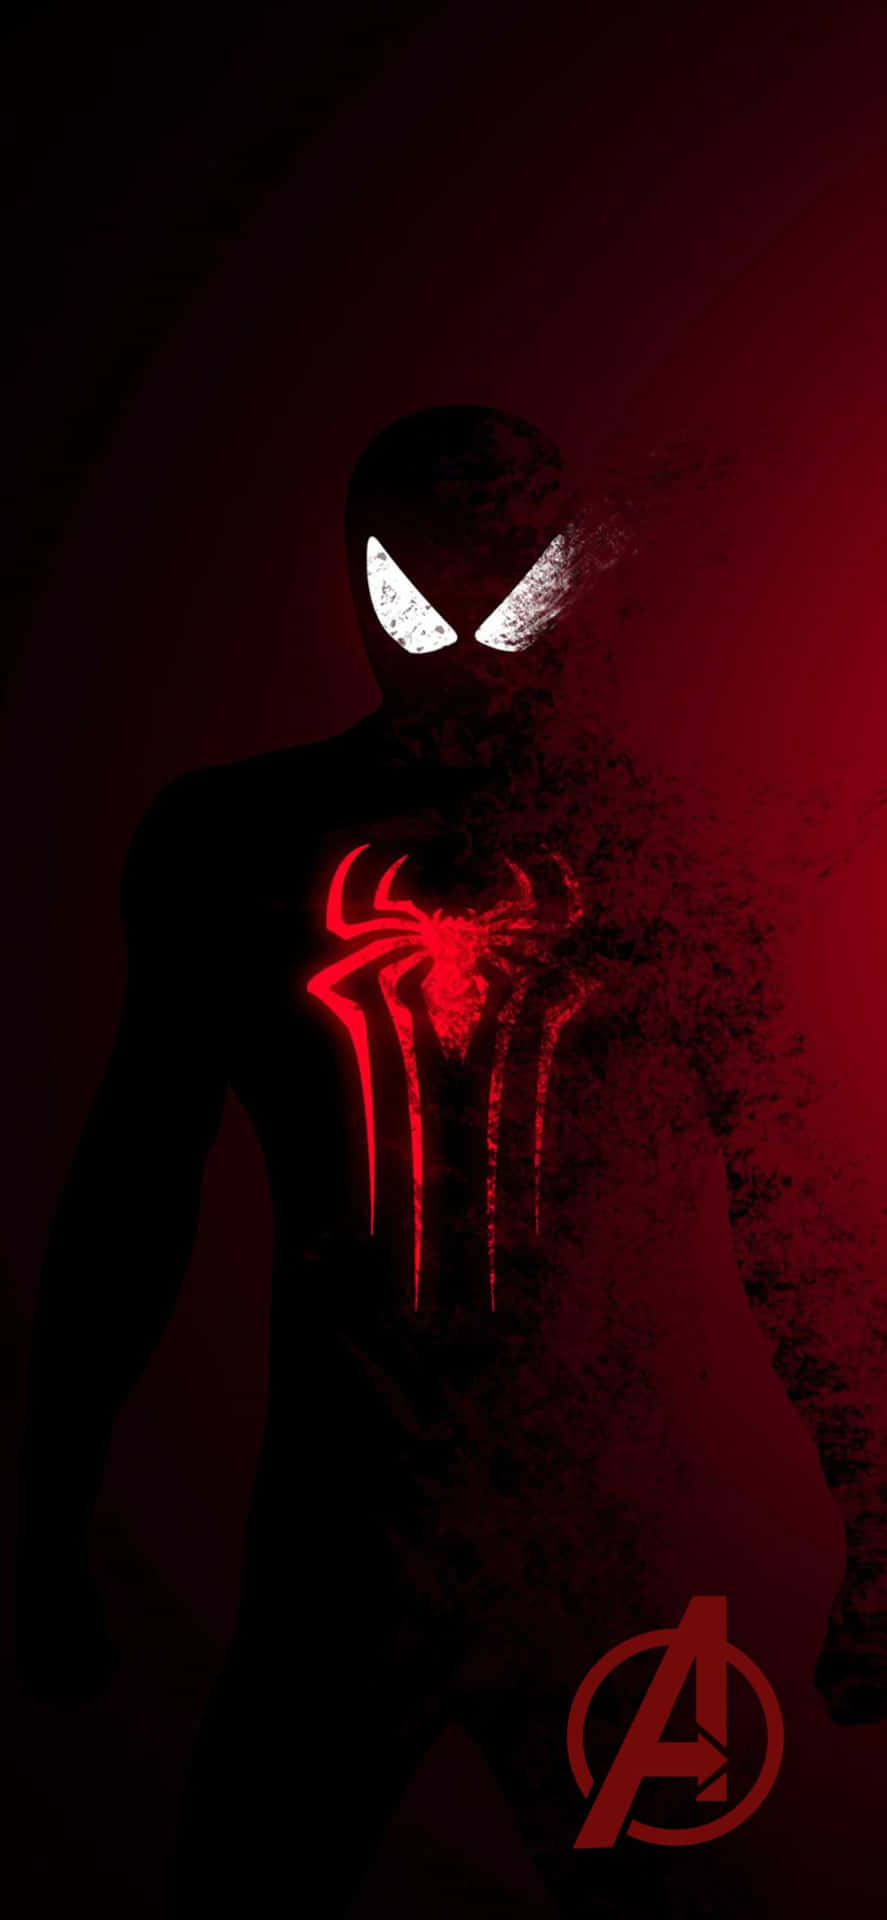 Fondode Pantalla De Spider-man De Avengers Para Iphone Xs En Color Rojo Oscuro.